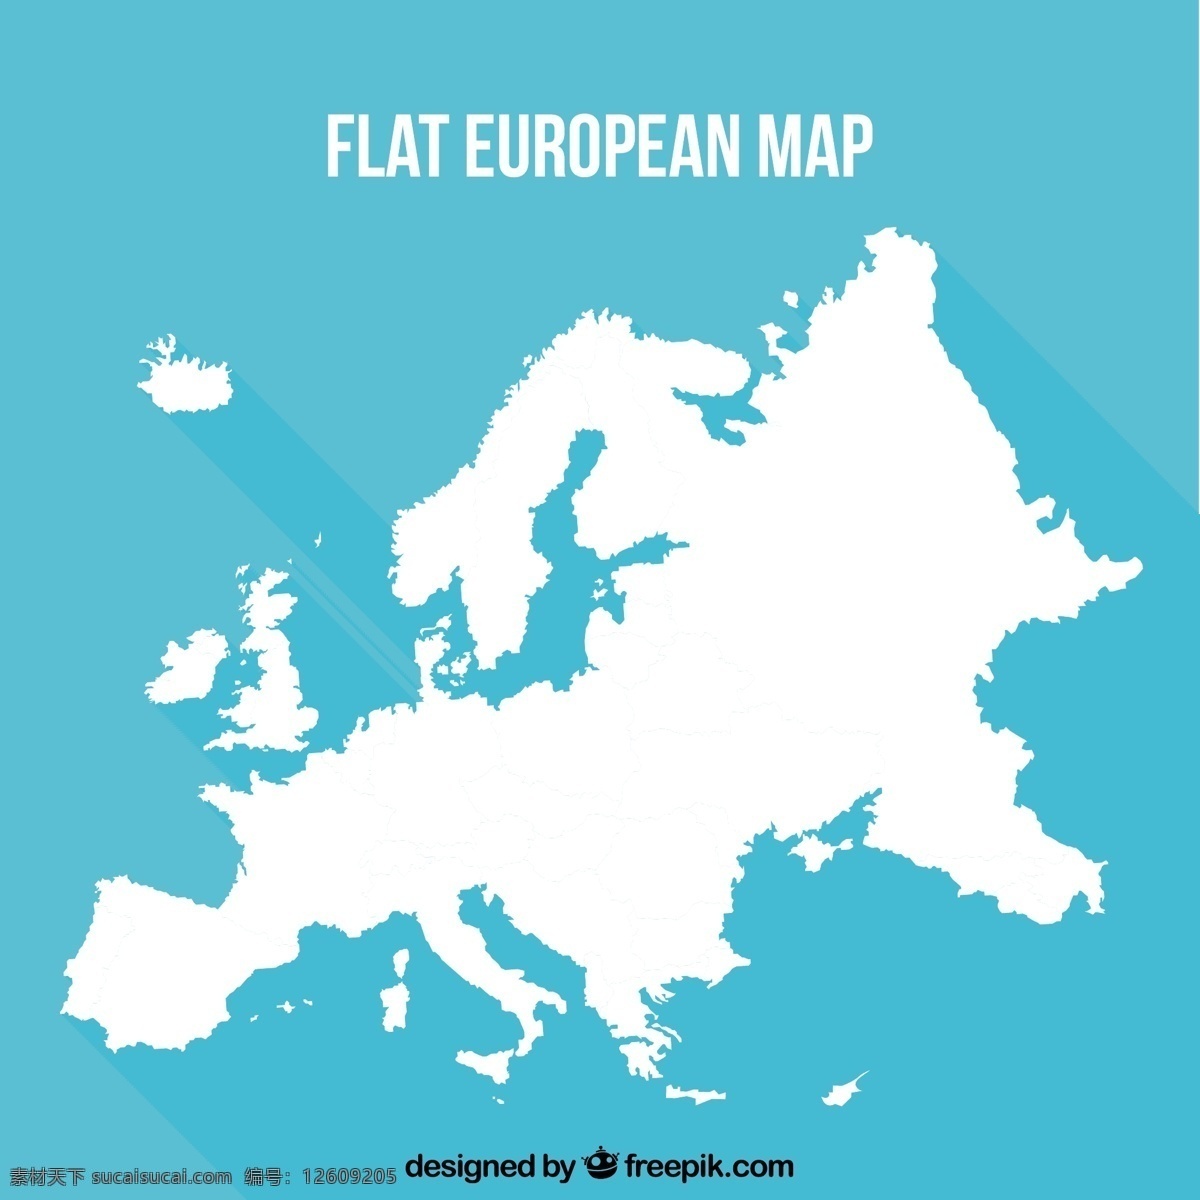 蓝色 背景 欧式 平面 地图 旅行 世界 世界地图 地球 剪影 旅游 度假 假期 乡村 地理 欧洲 行李